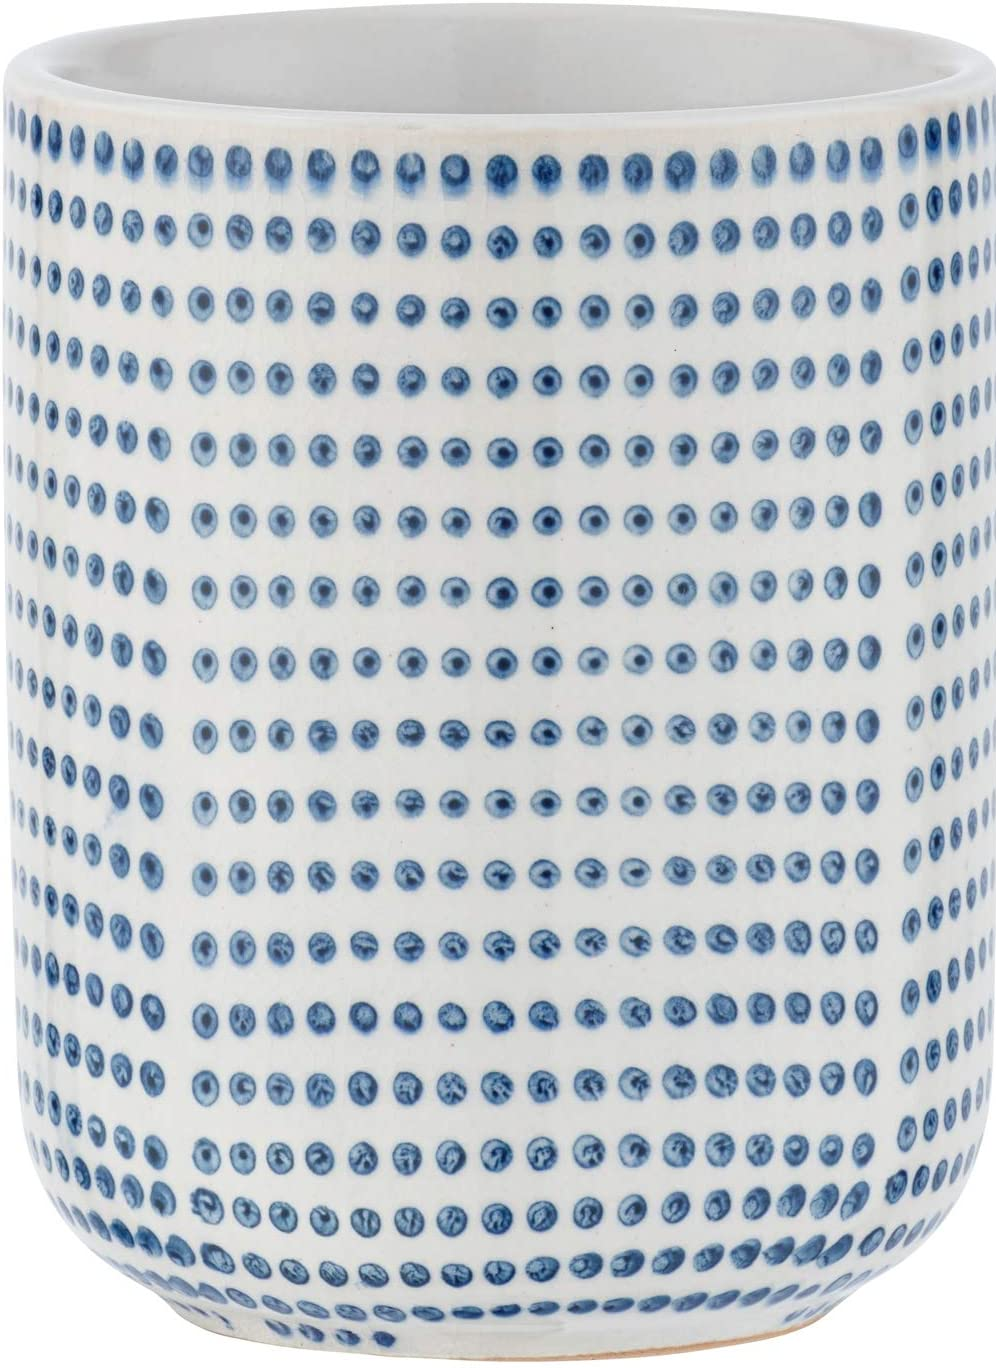 Zahnputzbecher Nole Keramik - Zahnbürstenhalter für Zahnbürste und Zahnpasta, Keramik, 7.5 x 9.5 x 7.5 cm, Weiß